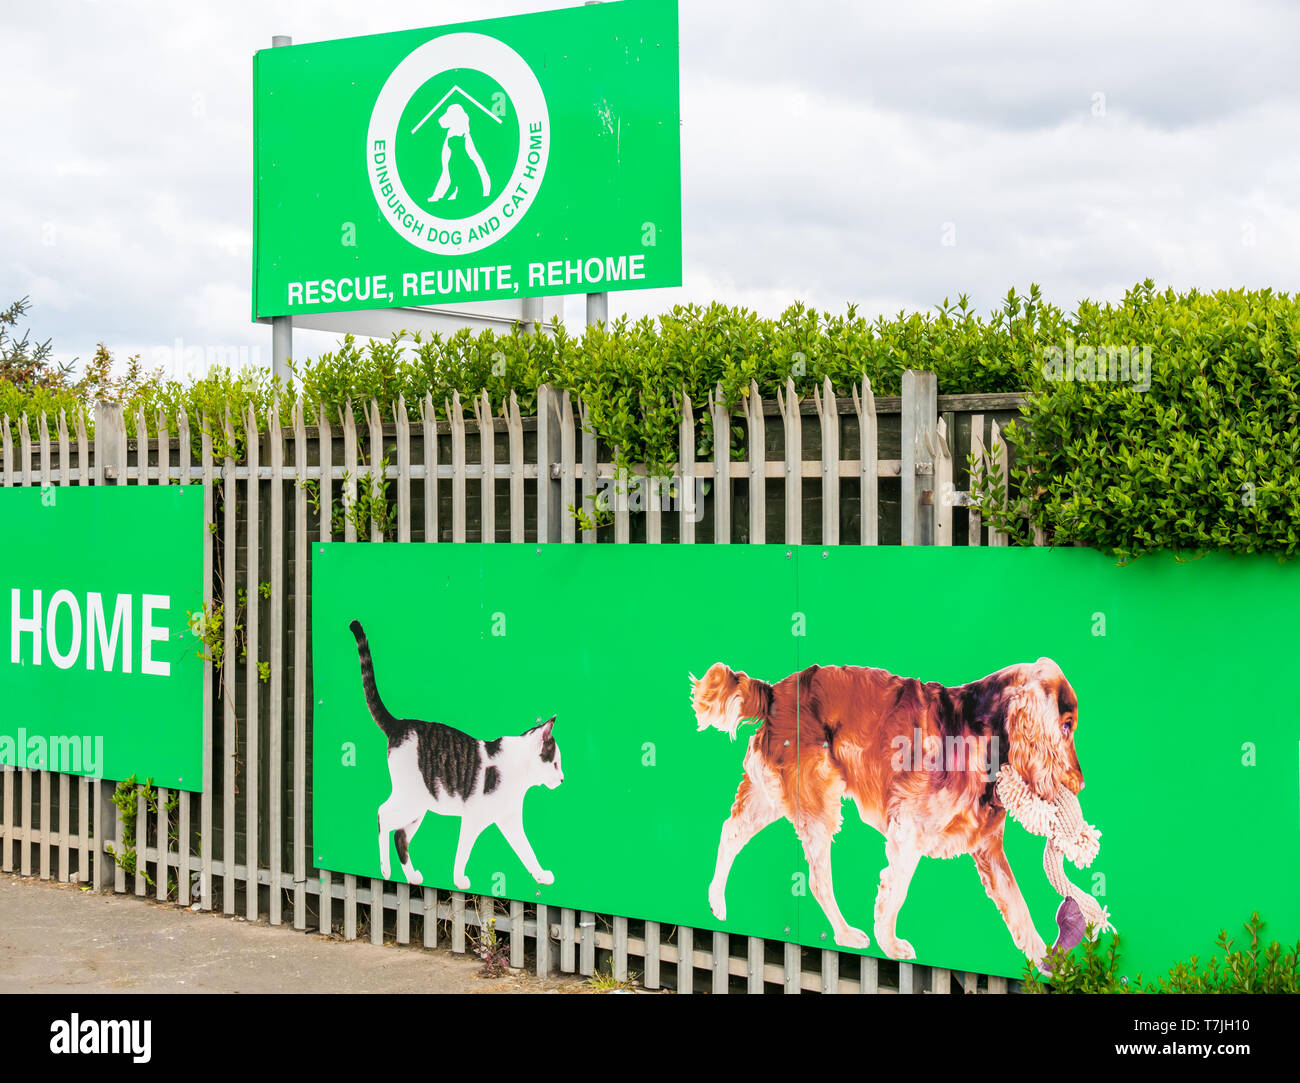 Edinburgh Hund & Katze Home Eingang, pet Animal Rescue Center, Seafield, Edinburgh, Schottland, Großbritannien Stockfoto